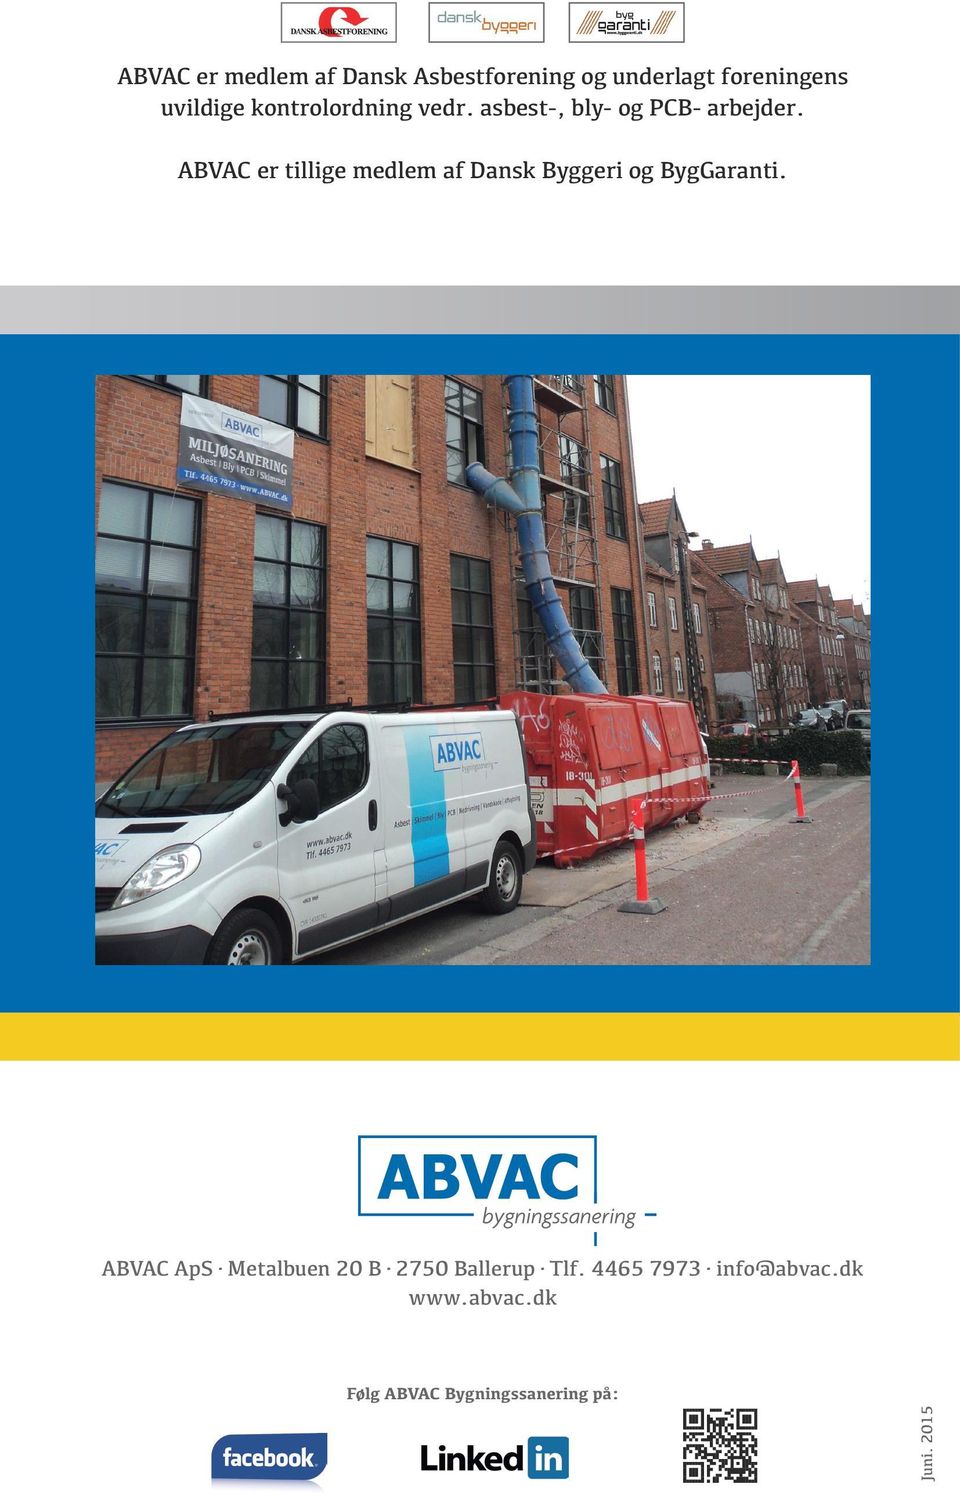 ABVAC er tillige medlem af Dansk Byggeri og BygGaranti.